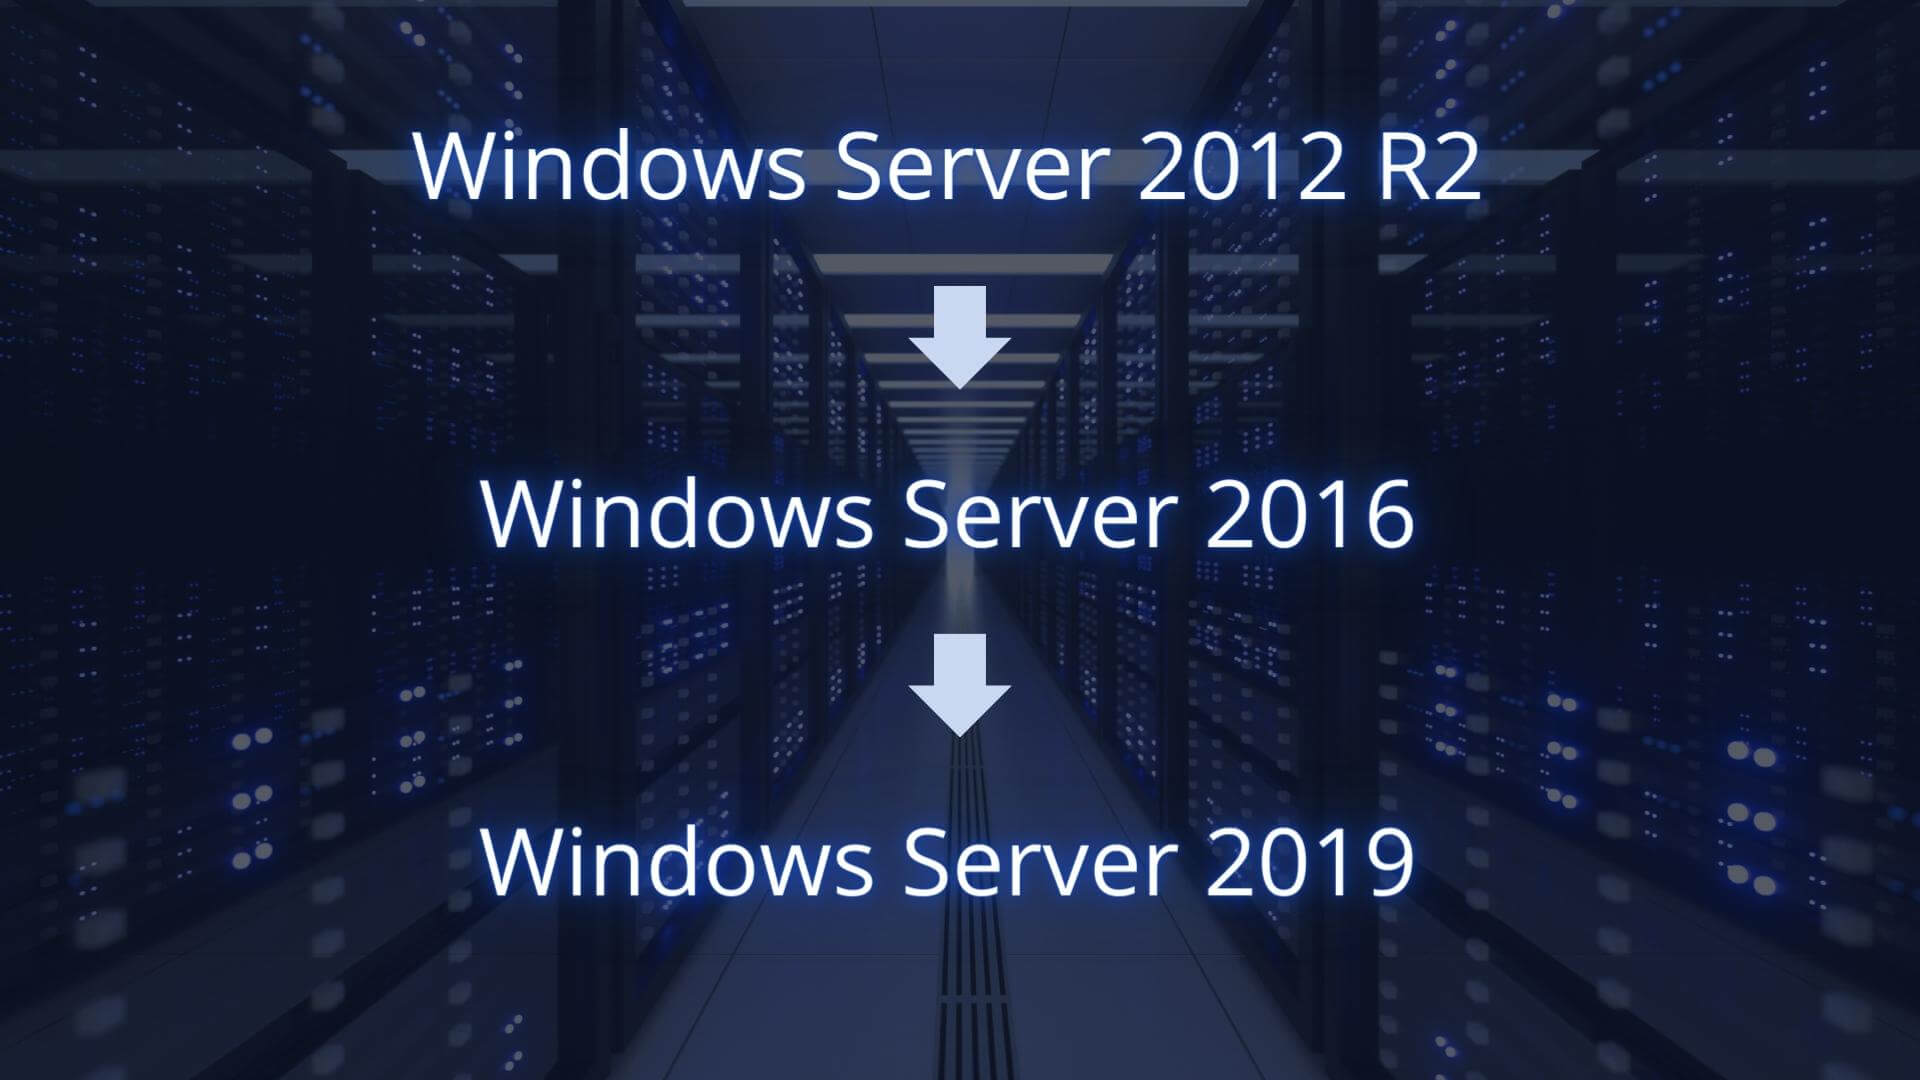 Steps to upgrade Windows Server